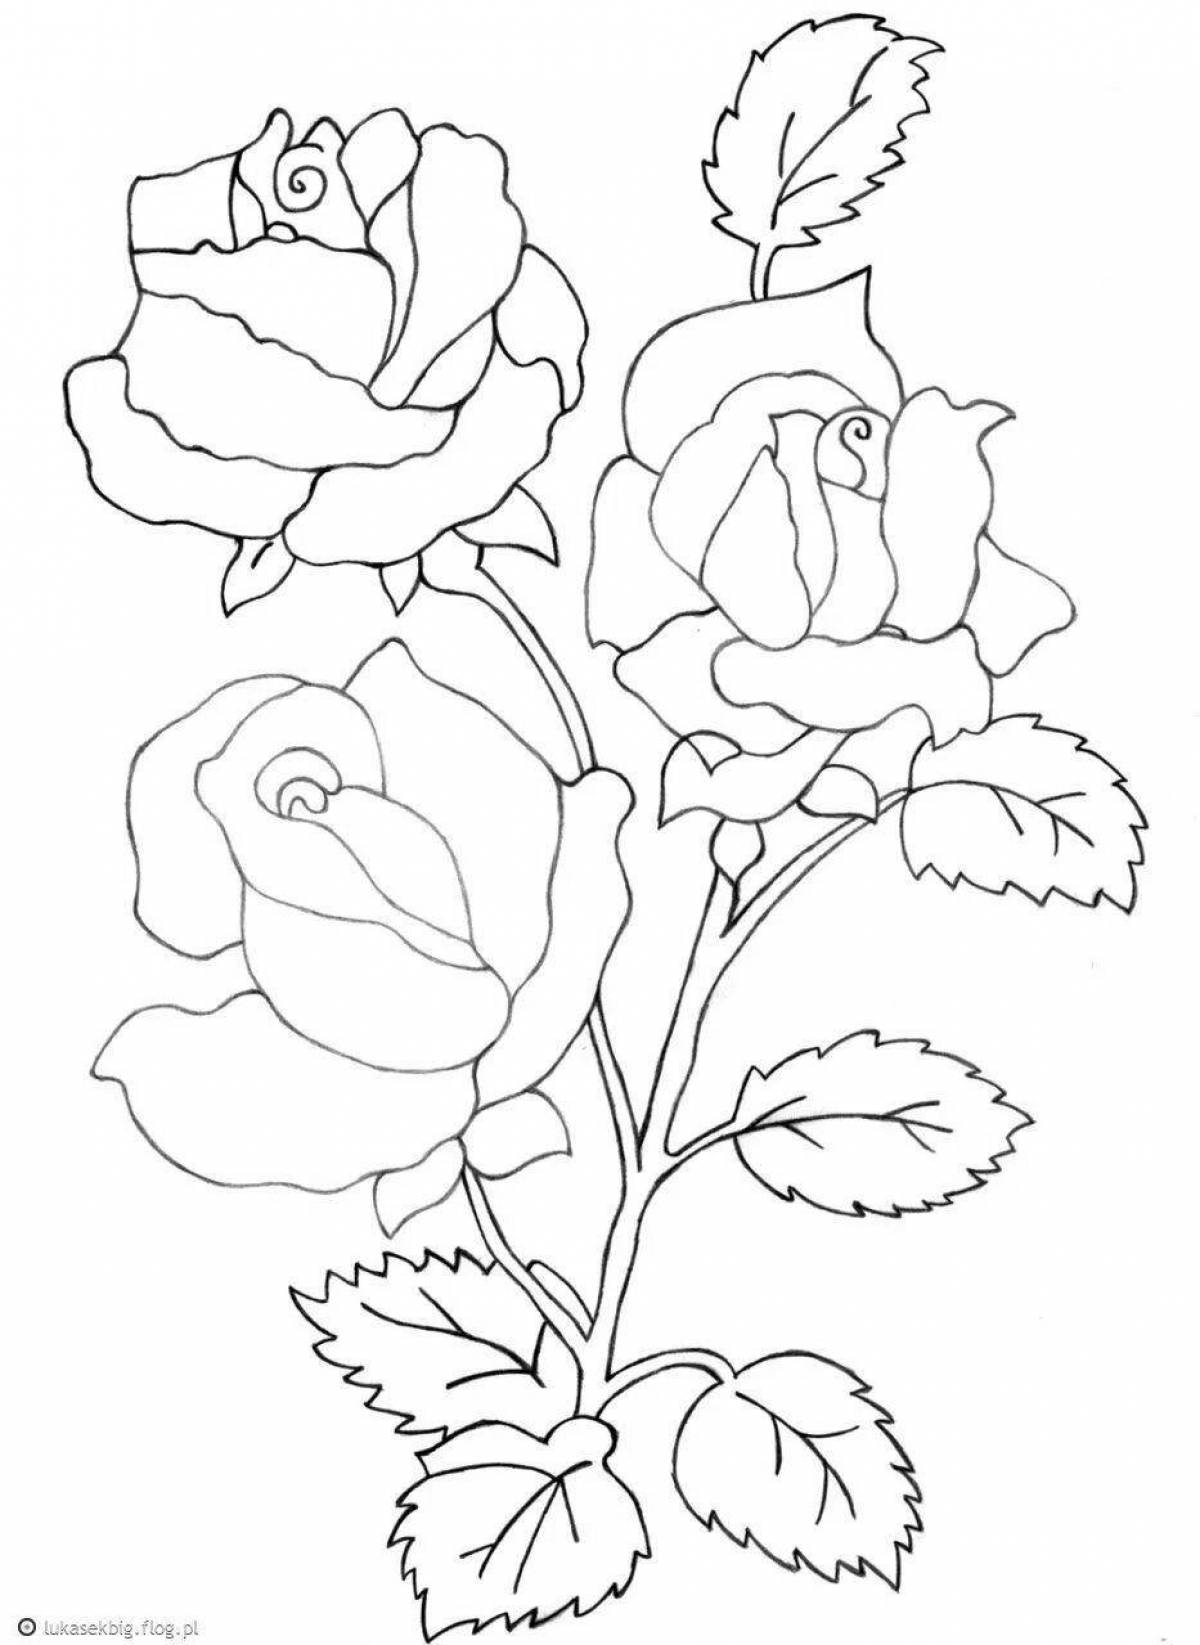 Радостные раскраски розы для детей 5-6 лет